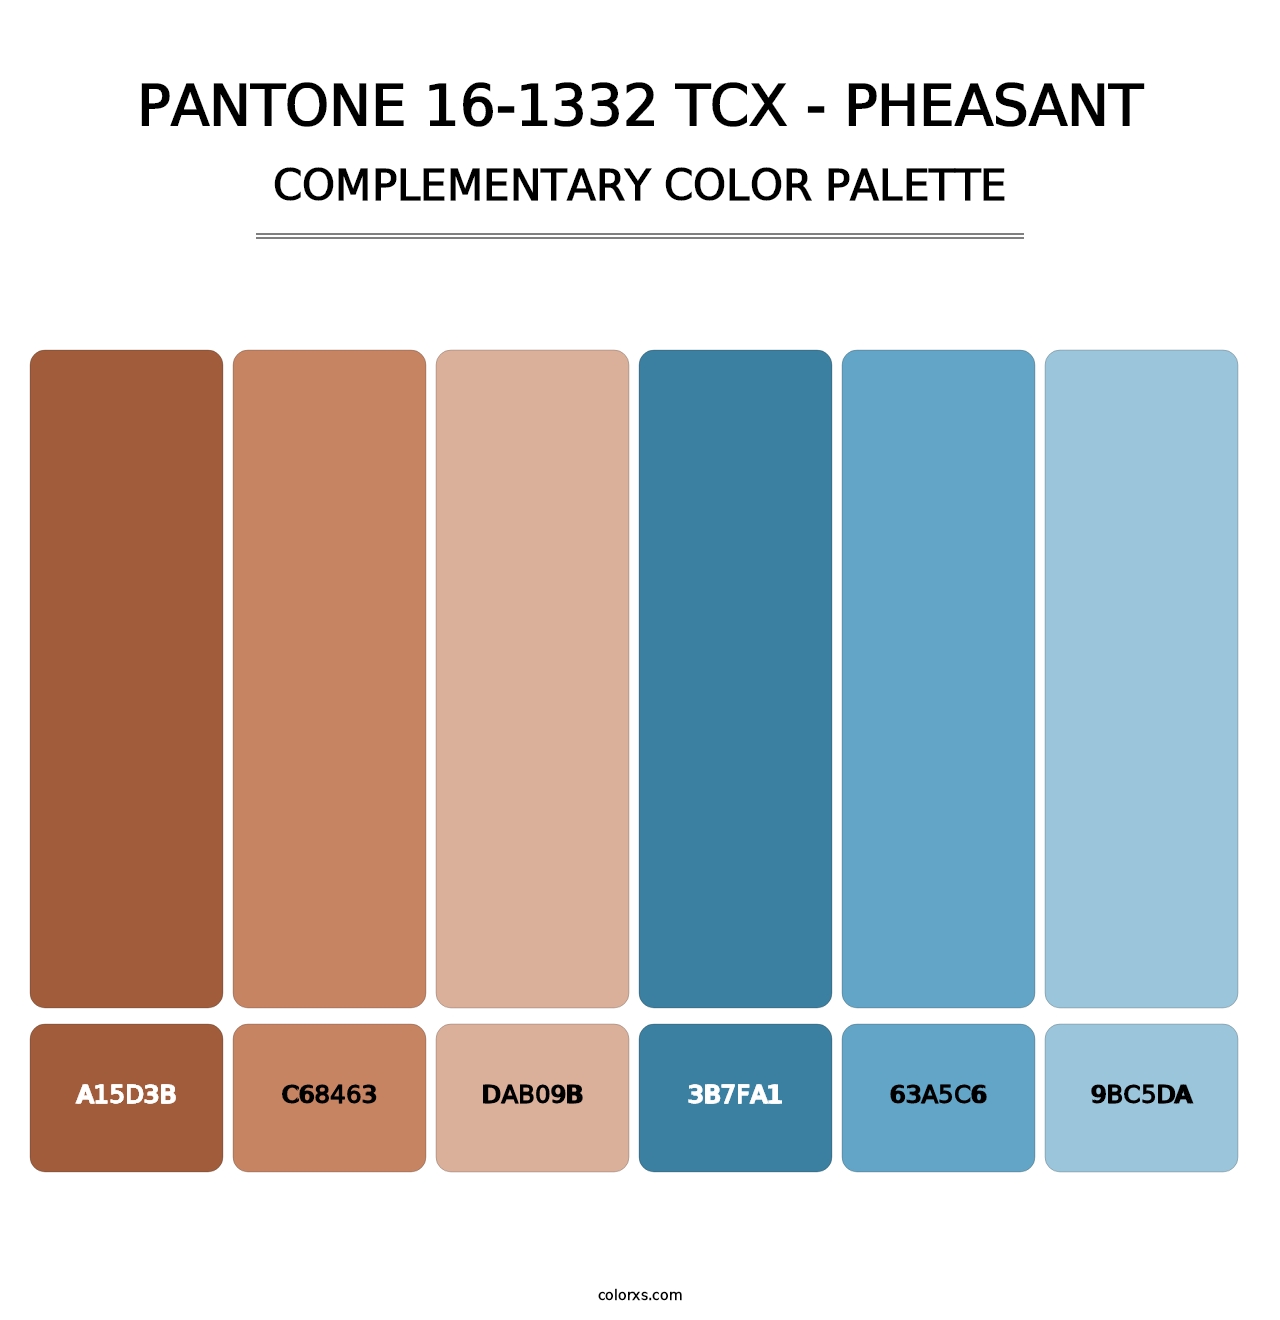 PANTONE 16-1332 TCX - Pheasant - Complementary Color Palette